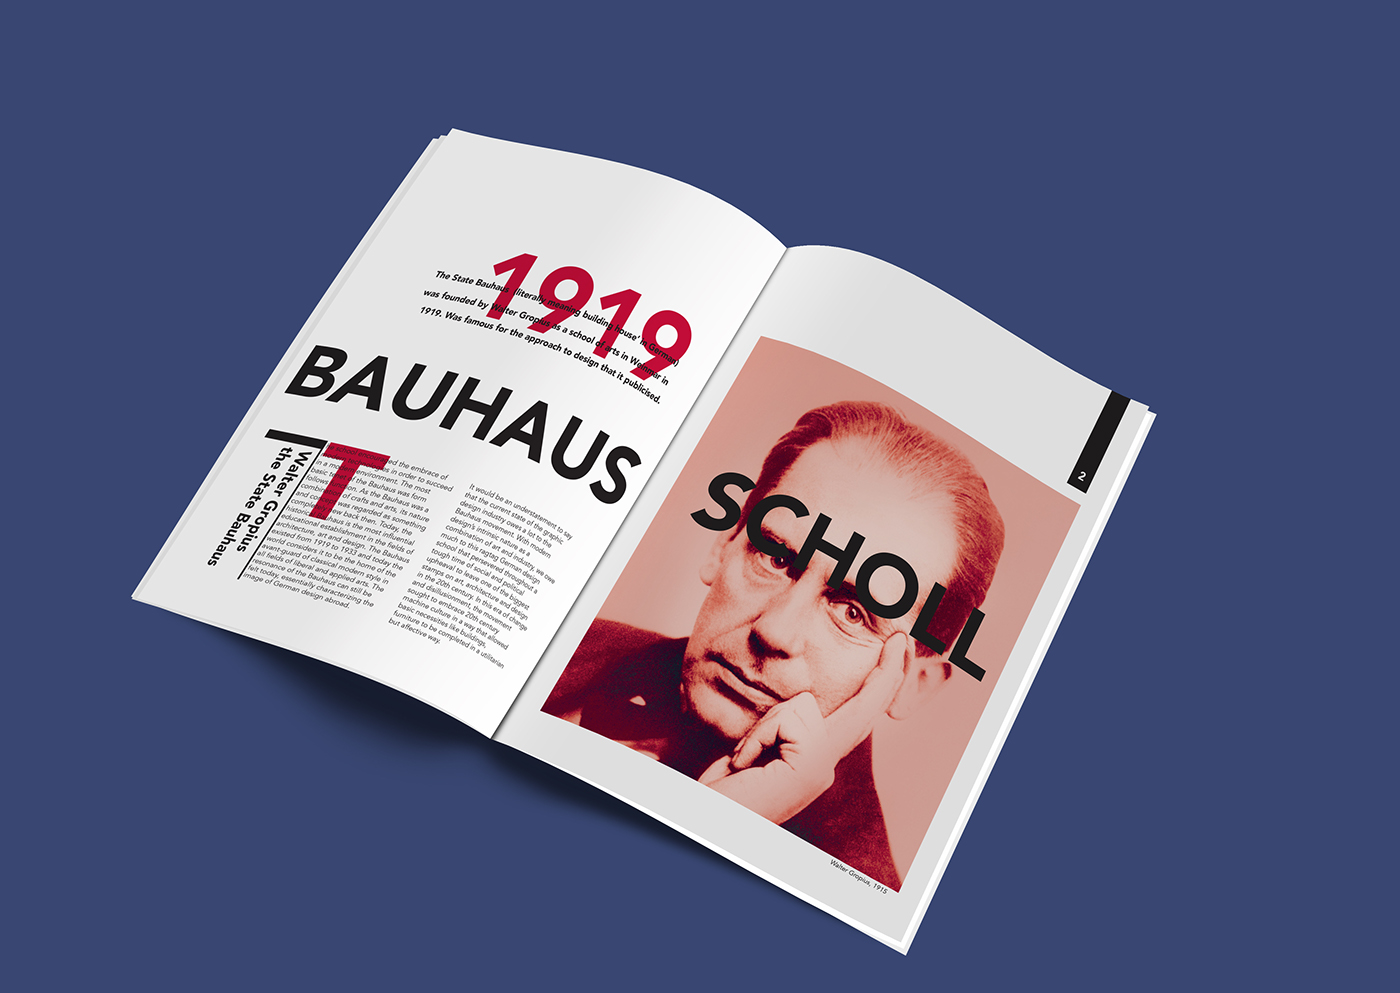 bauhaus graphic design  editorial magazine Walter Groupius germany Paul Klee josef albers kandinsky Herbert Bayer